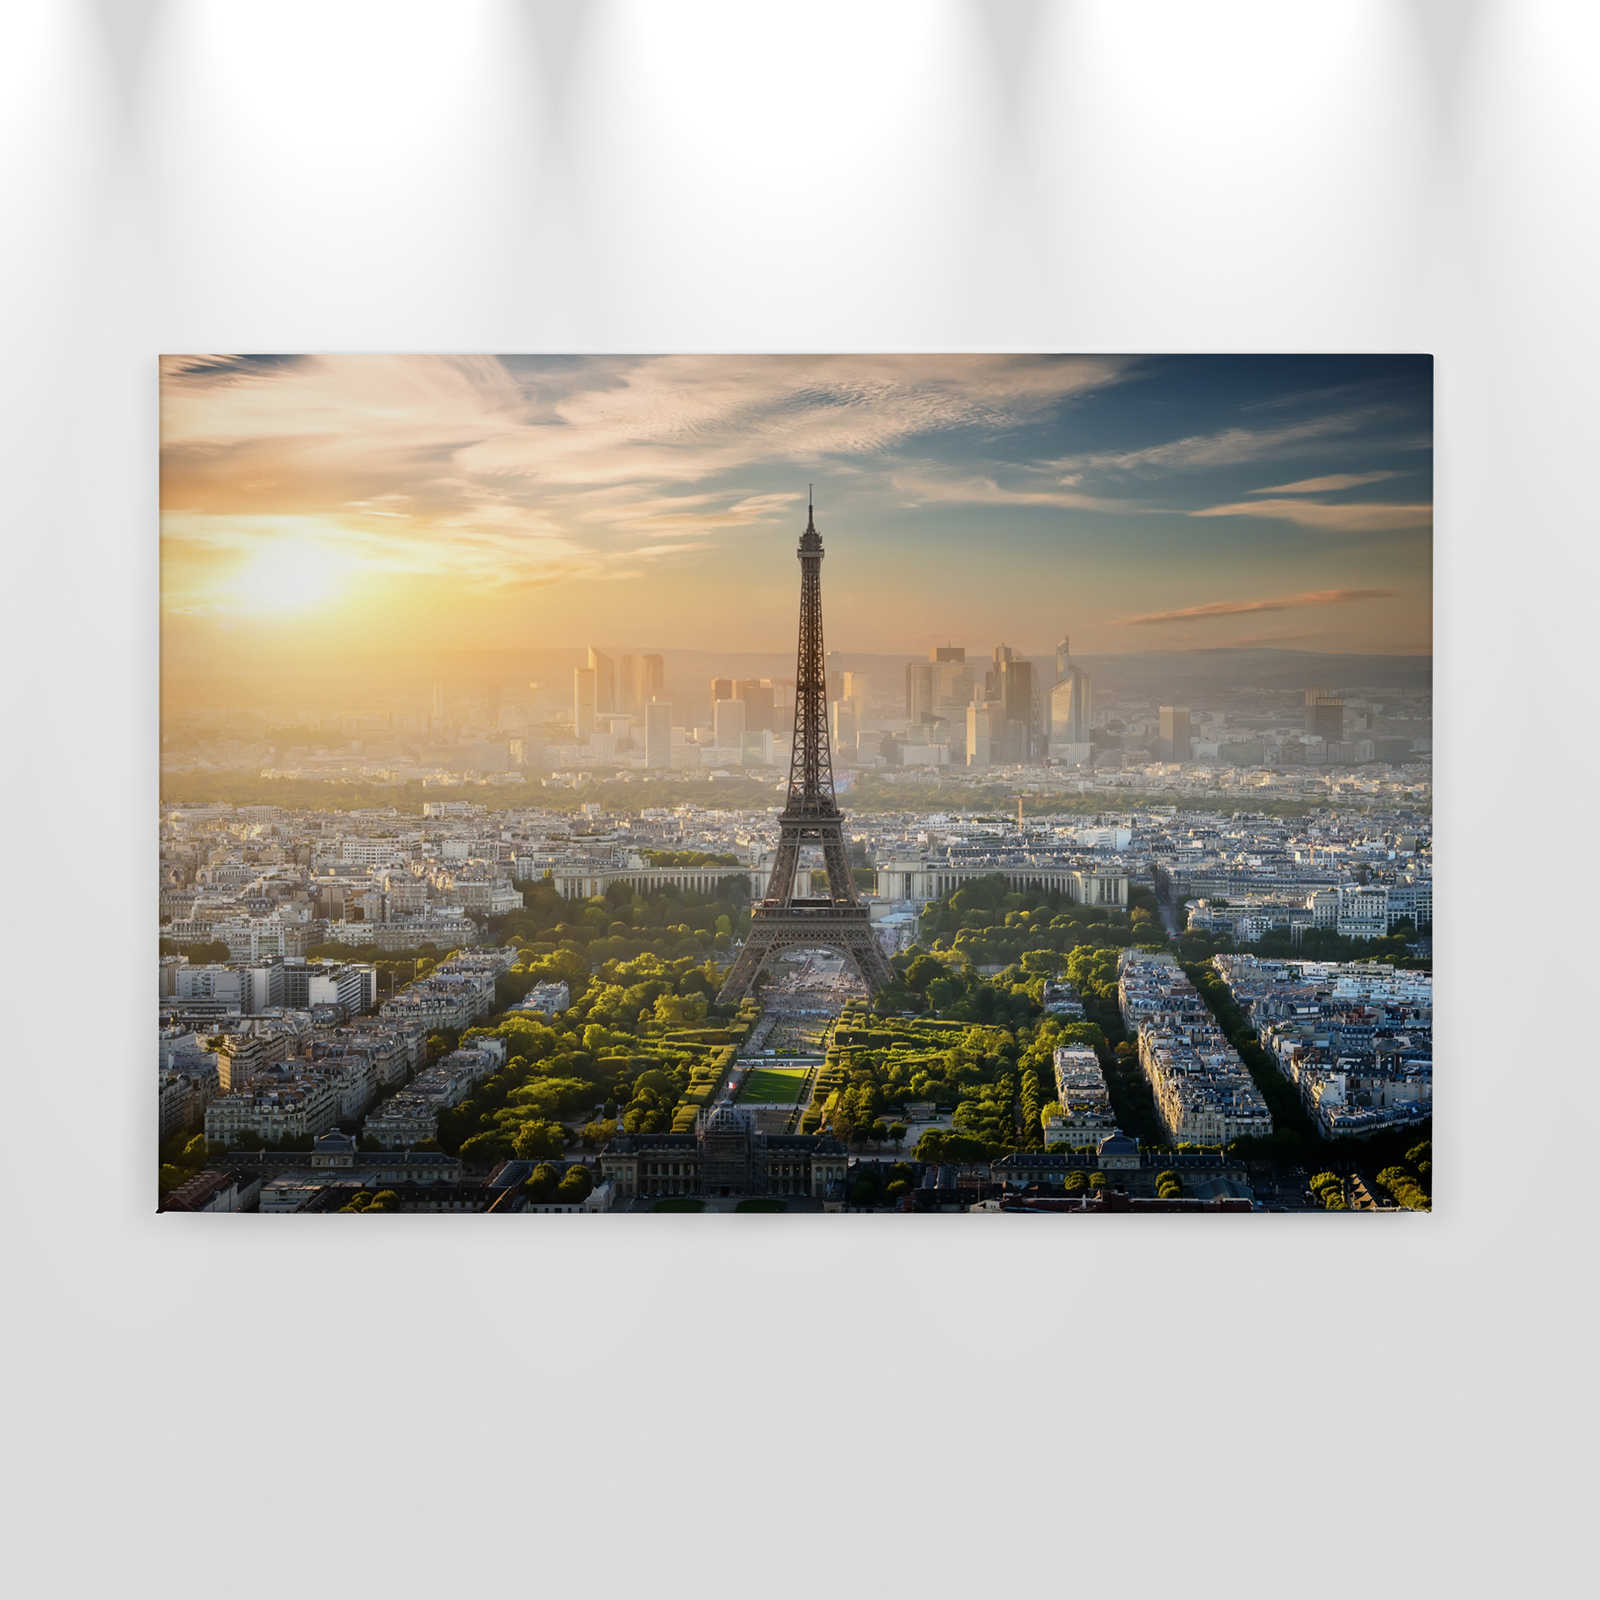             Canvas Eifel Tower Paris - 0.90 m x 0.60 m
        